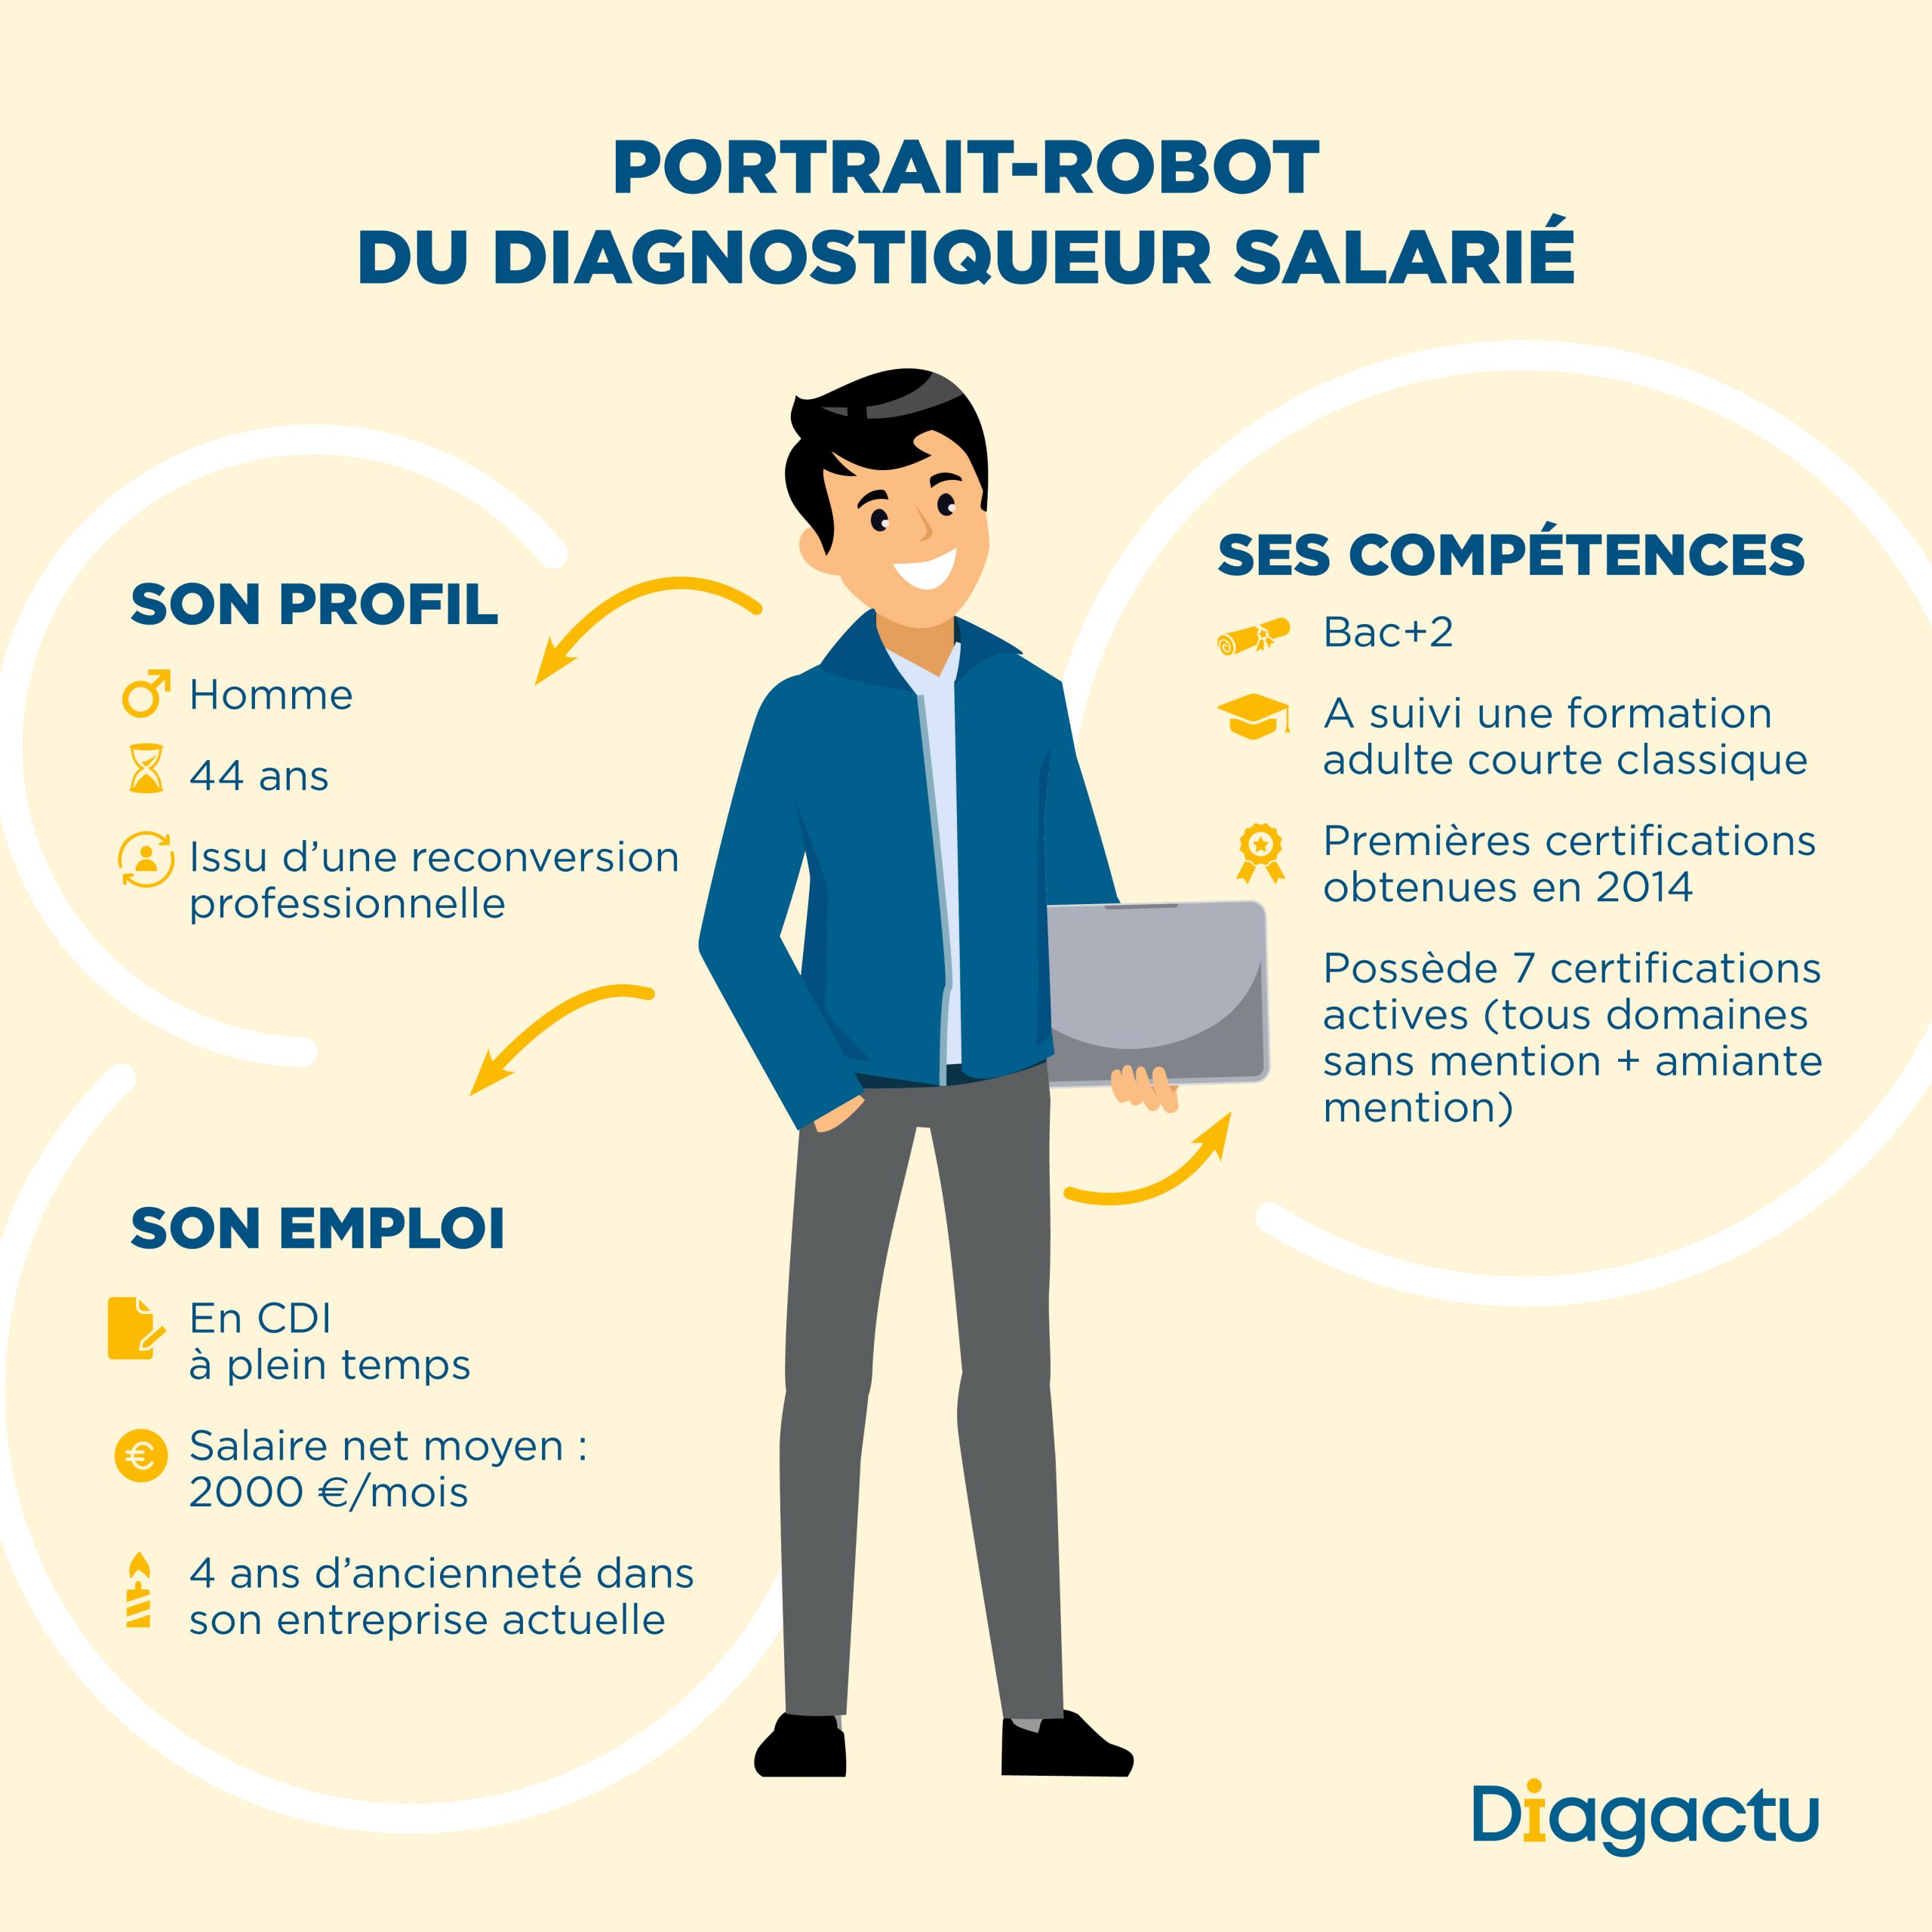 Portrait-robot du diagnostiqueur salarié